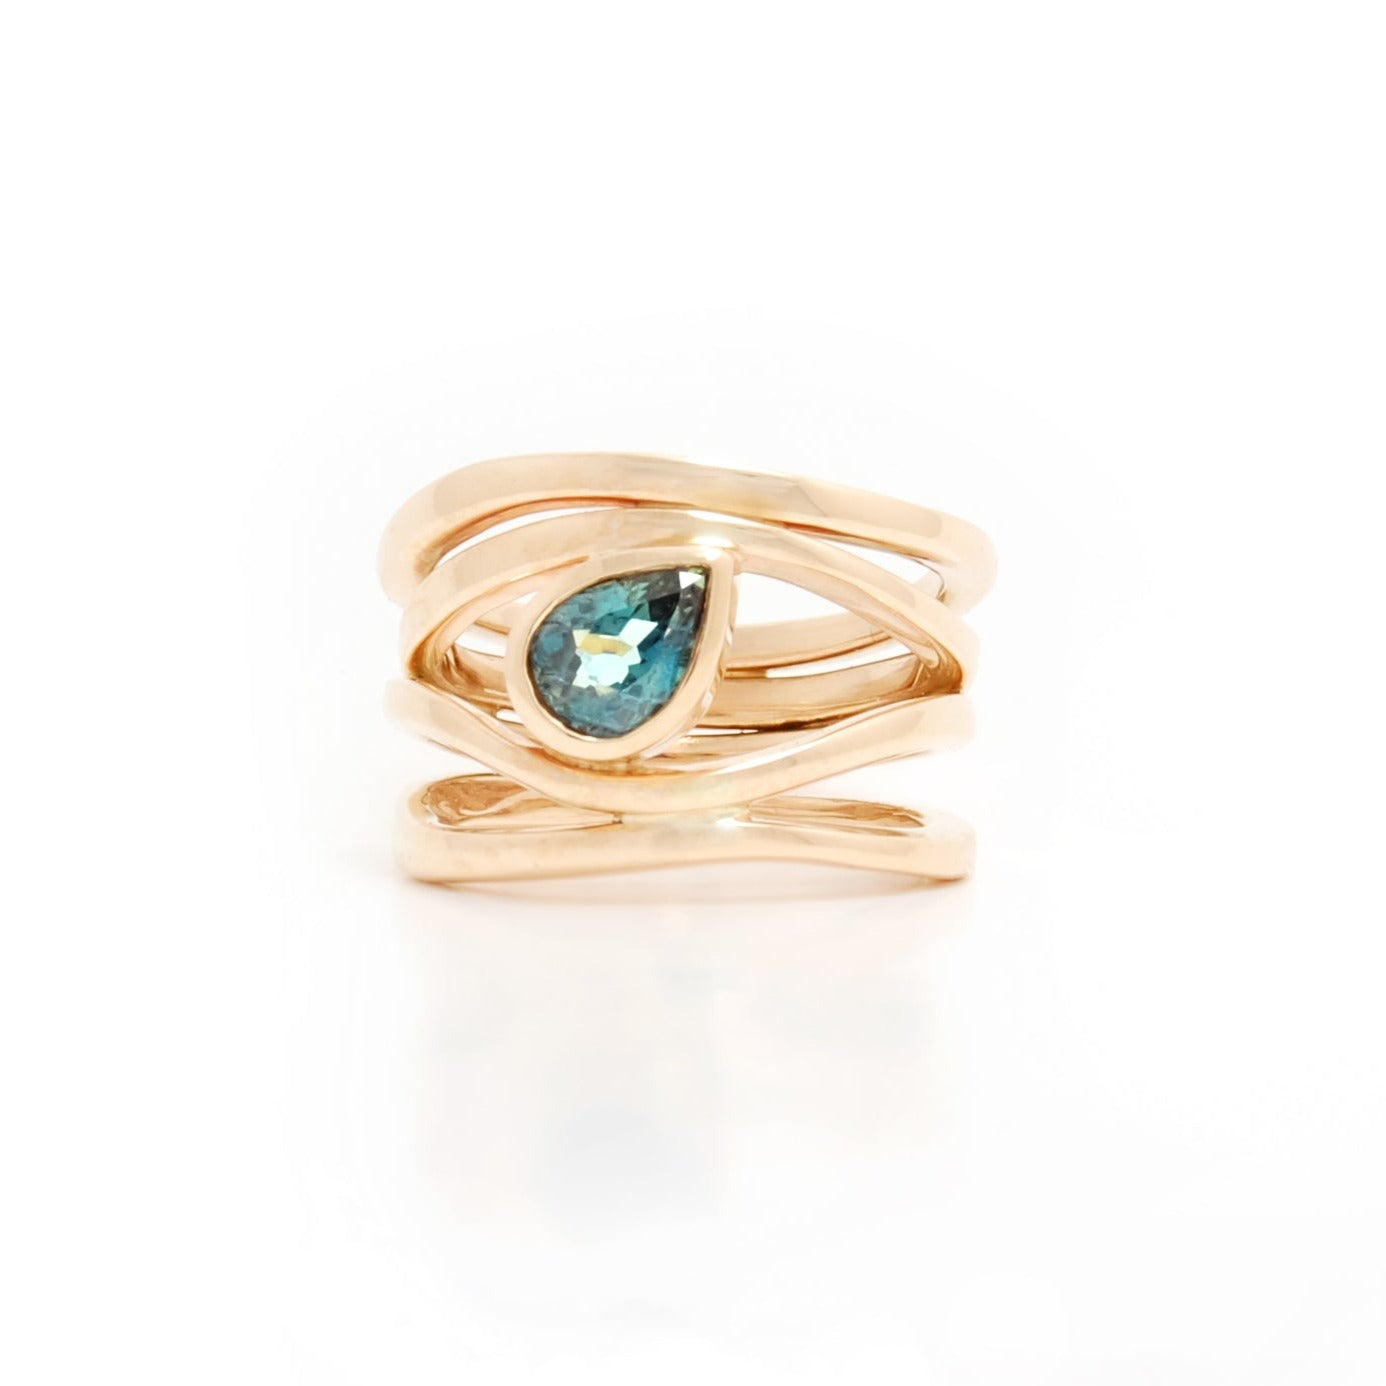 Adrift Ring featuring an Australian Sapphire